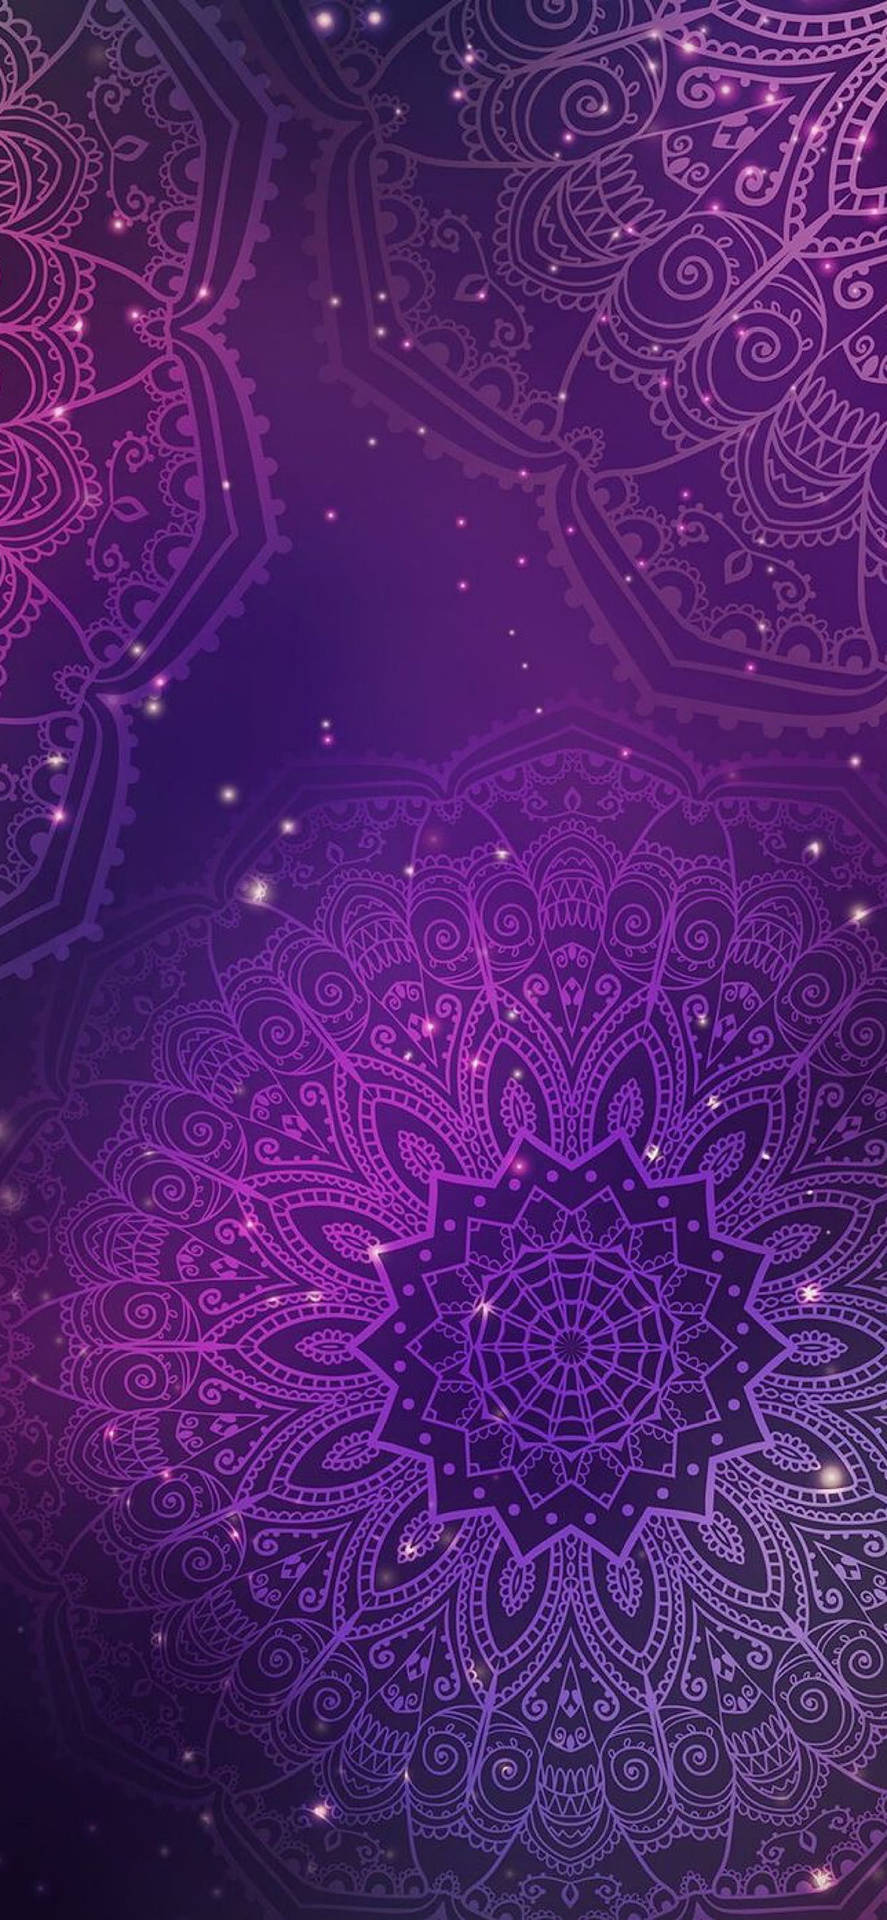 Aesthetic Boho Purple Mandala Wallpaper